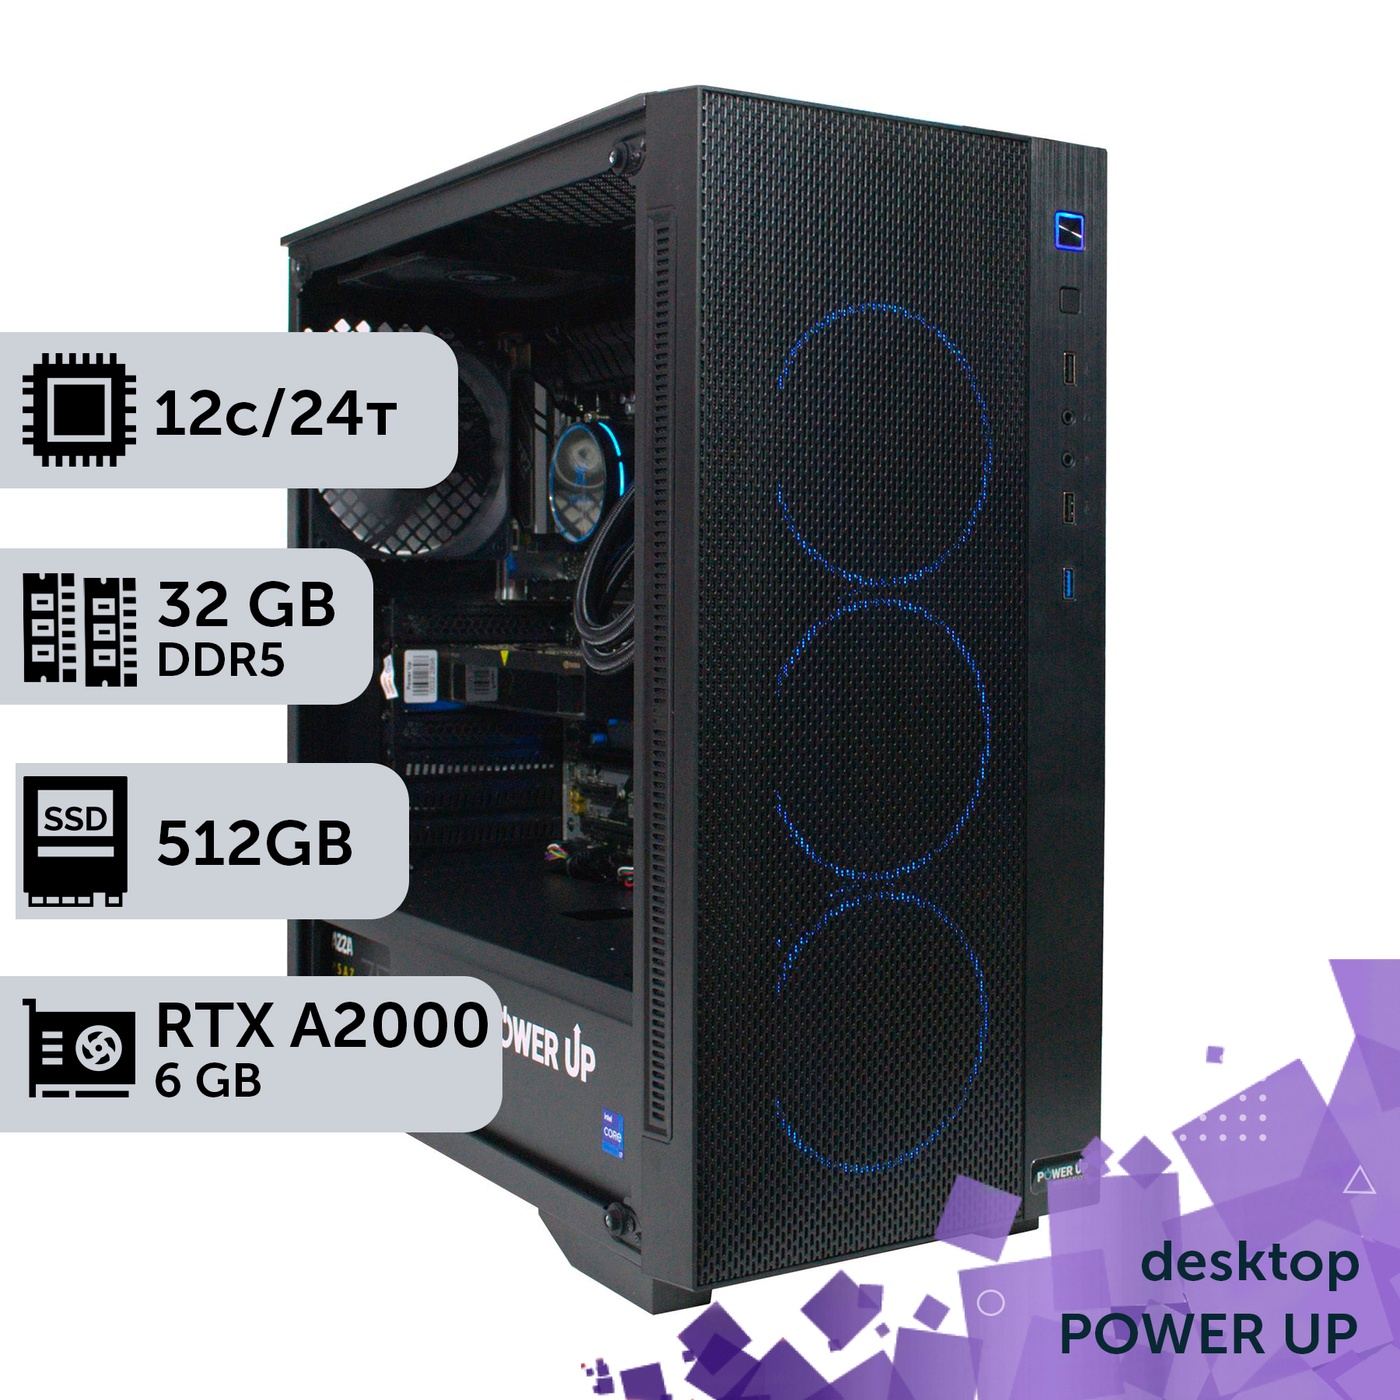 Робоча станція PowerUp Desktop #267 Ryzen 9 7900x/32 GB/SSD 512GB/NVIDIA Quadro RTX A2000 6GB